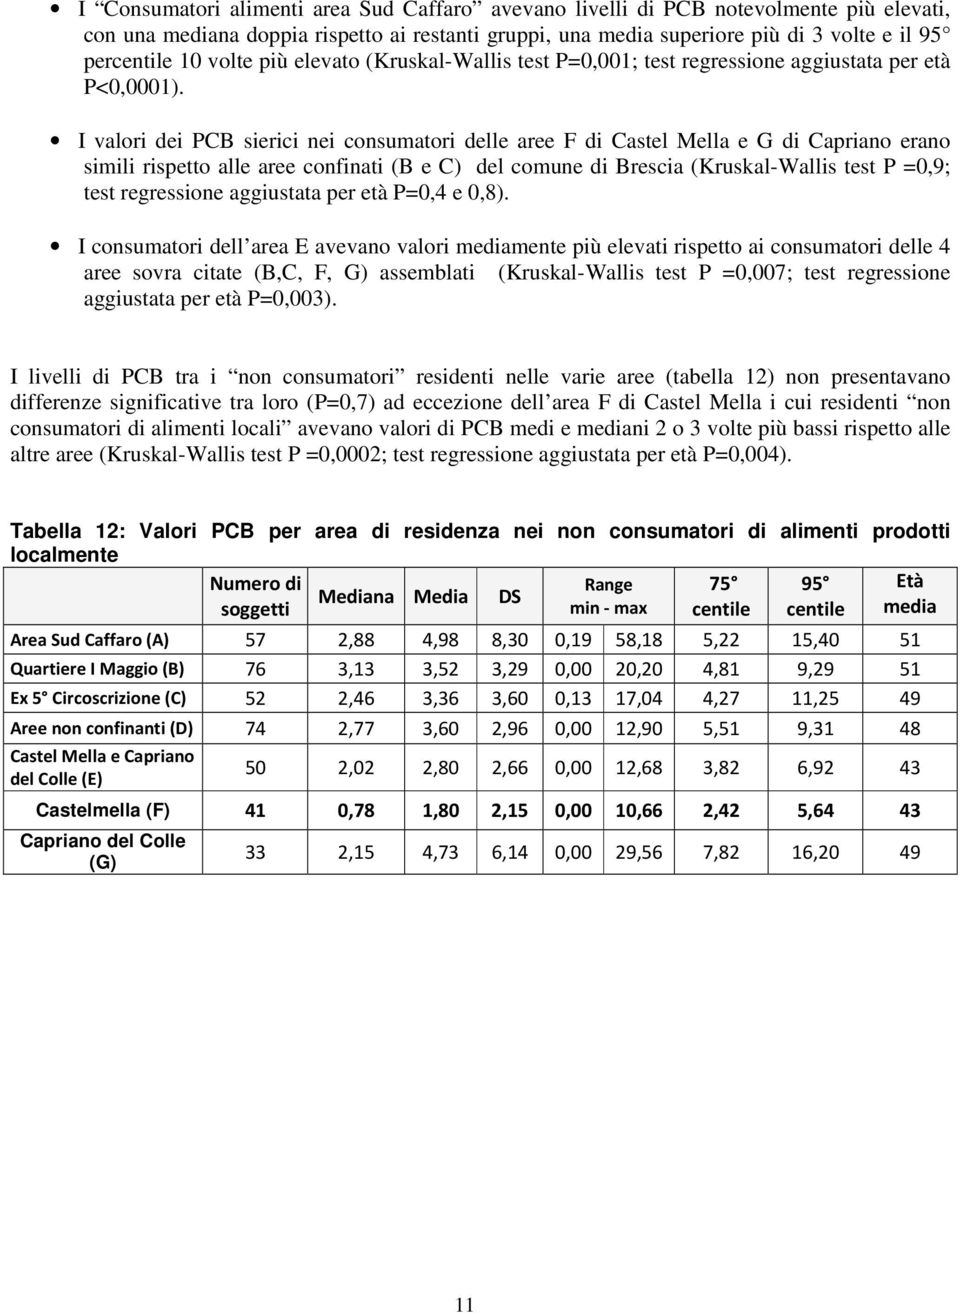 I valori dei PCB sierici nei consumatori delle aree F di Castel Mella e G di Capriano erano simili rispetto alle aree confinati (B e C) del comune di Brescia (Kruskal-Wallis test P =0,9; test